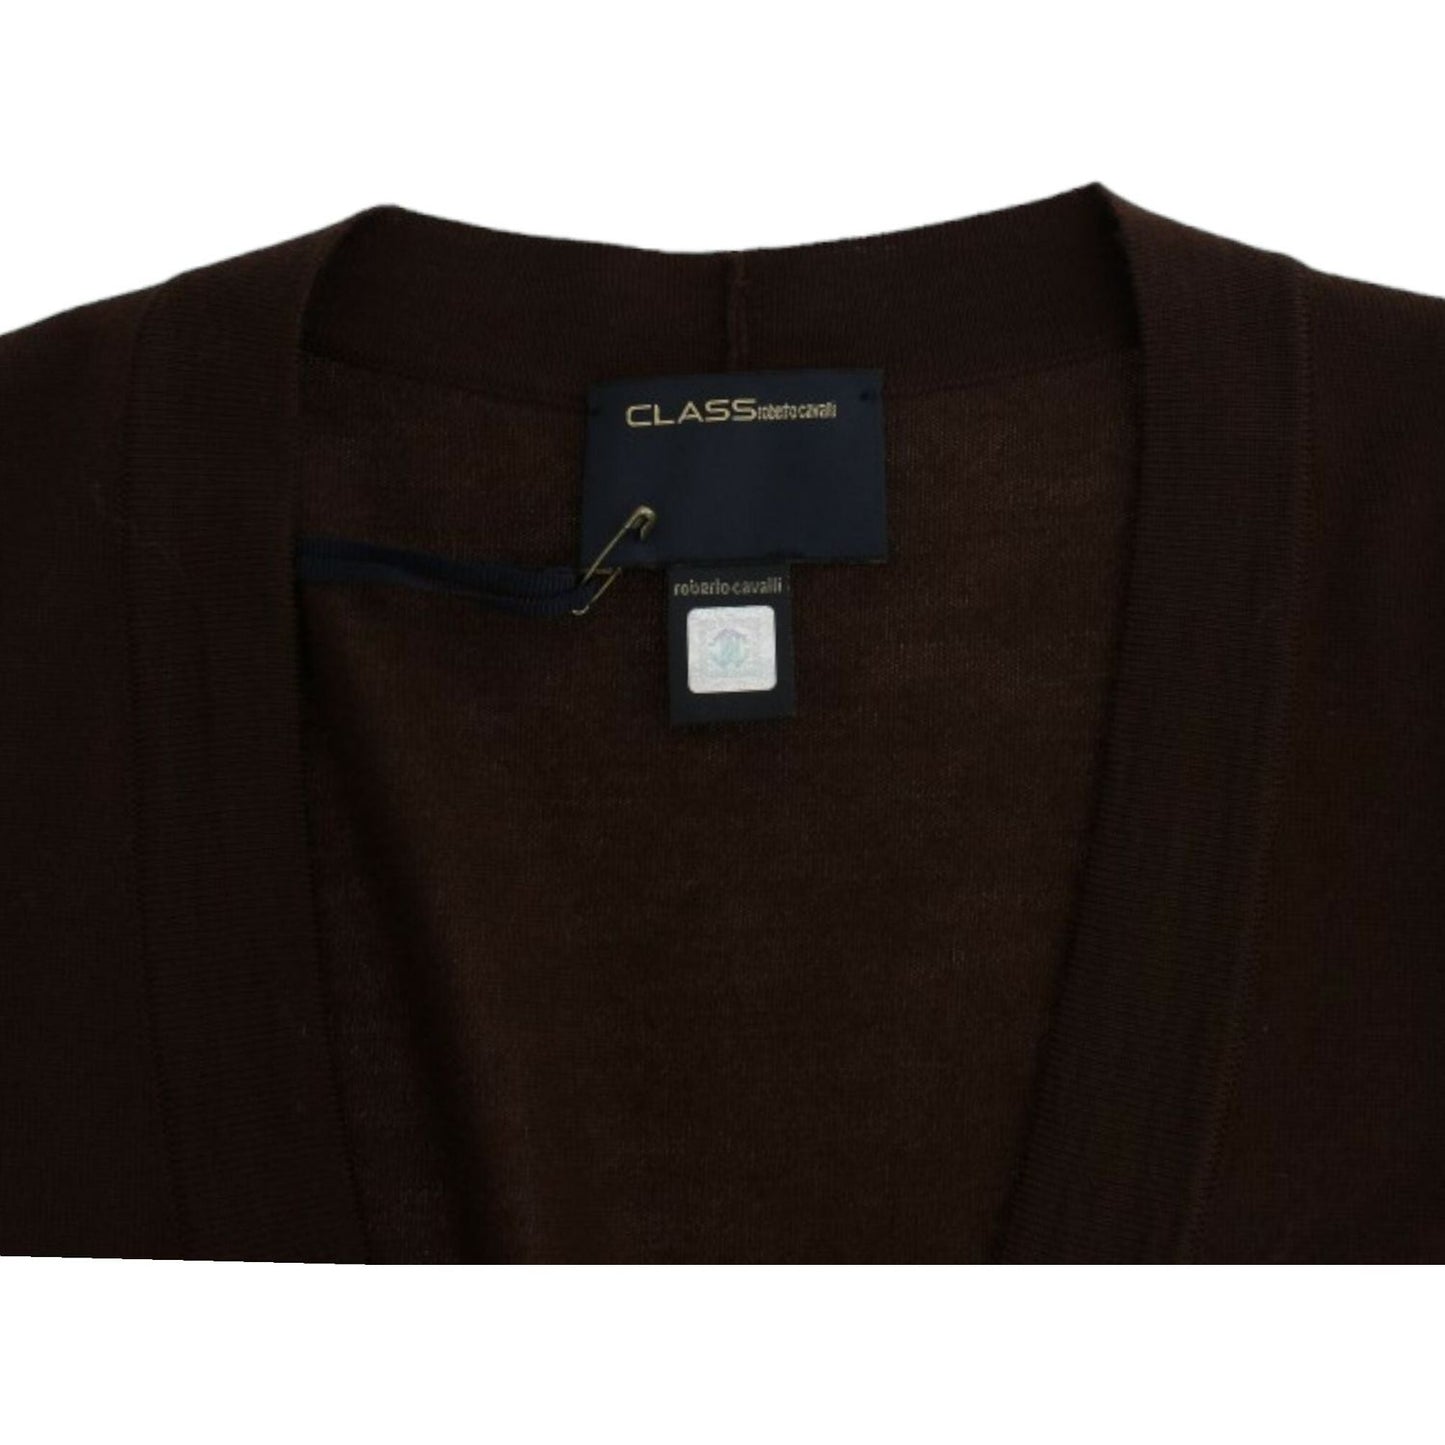 Cavalli Elegant Brown Virgin Wool Cropped Cardigan brown-cropped-wool-cardigan 8983-brown-cropped-wool-cardigan-5-scaled-015d6bcd-244.jpg